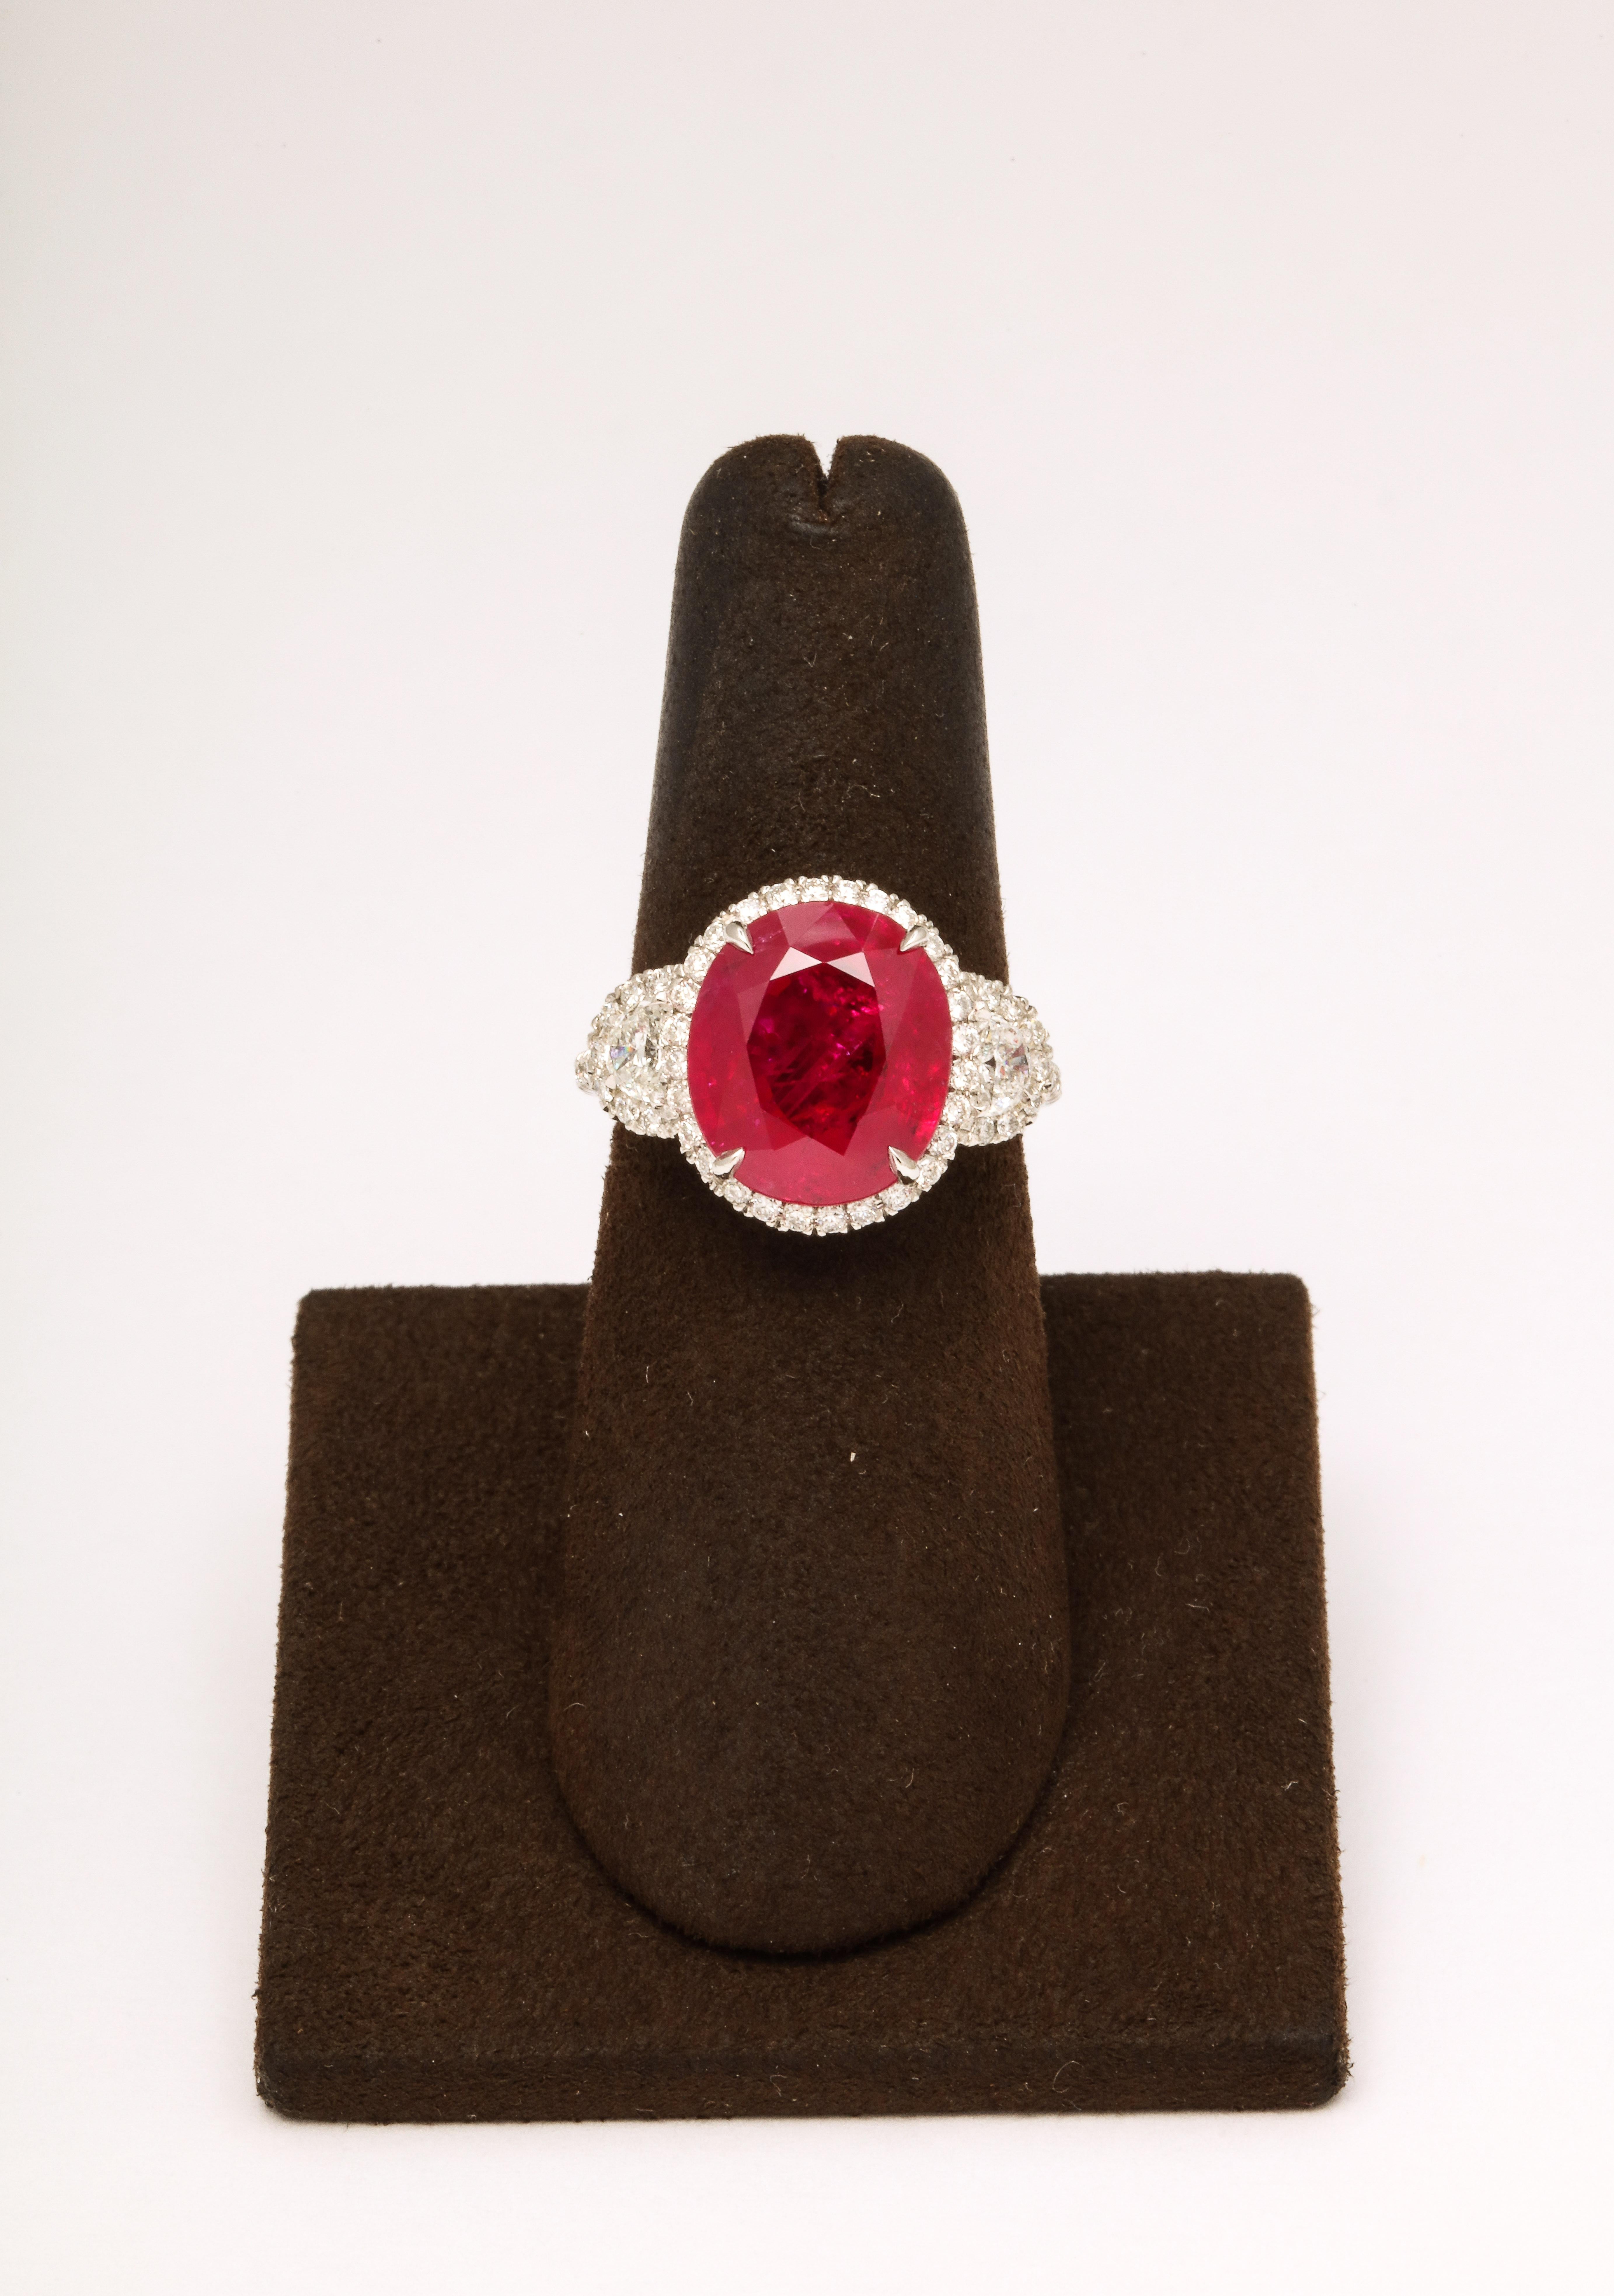 
7.18 Karat zertifizierter Burma-Rubin 

Eingefasst in eine Platin- und Diamantfassung mit 1,01 Karat weißen Diamanten im Rund- und Halbmondschliff. 

Ein fabelhafter Ring mit außergewöhnlicher Farbe. 

Derzeit Größe 6, kann dieser Ring leicht auf